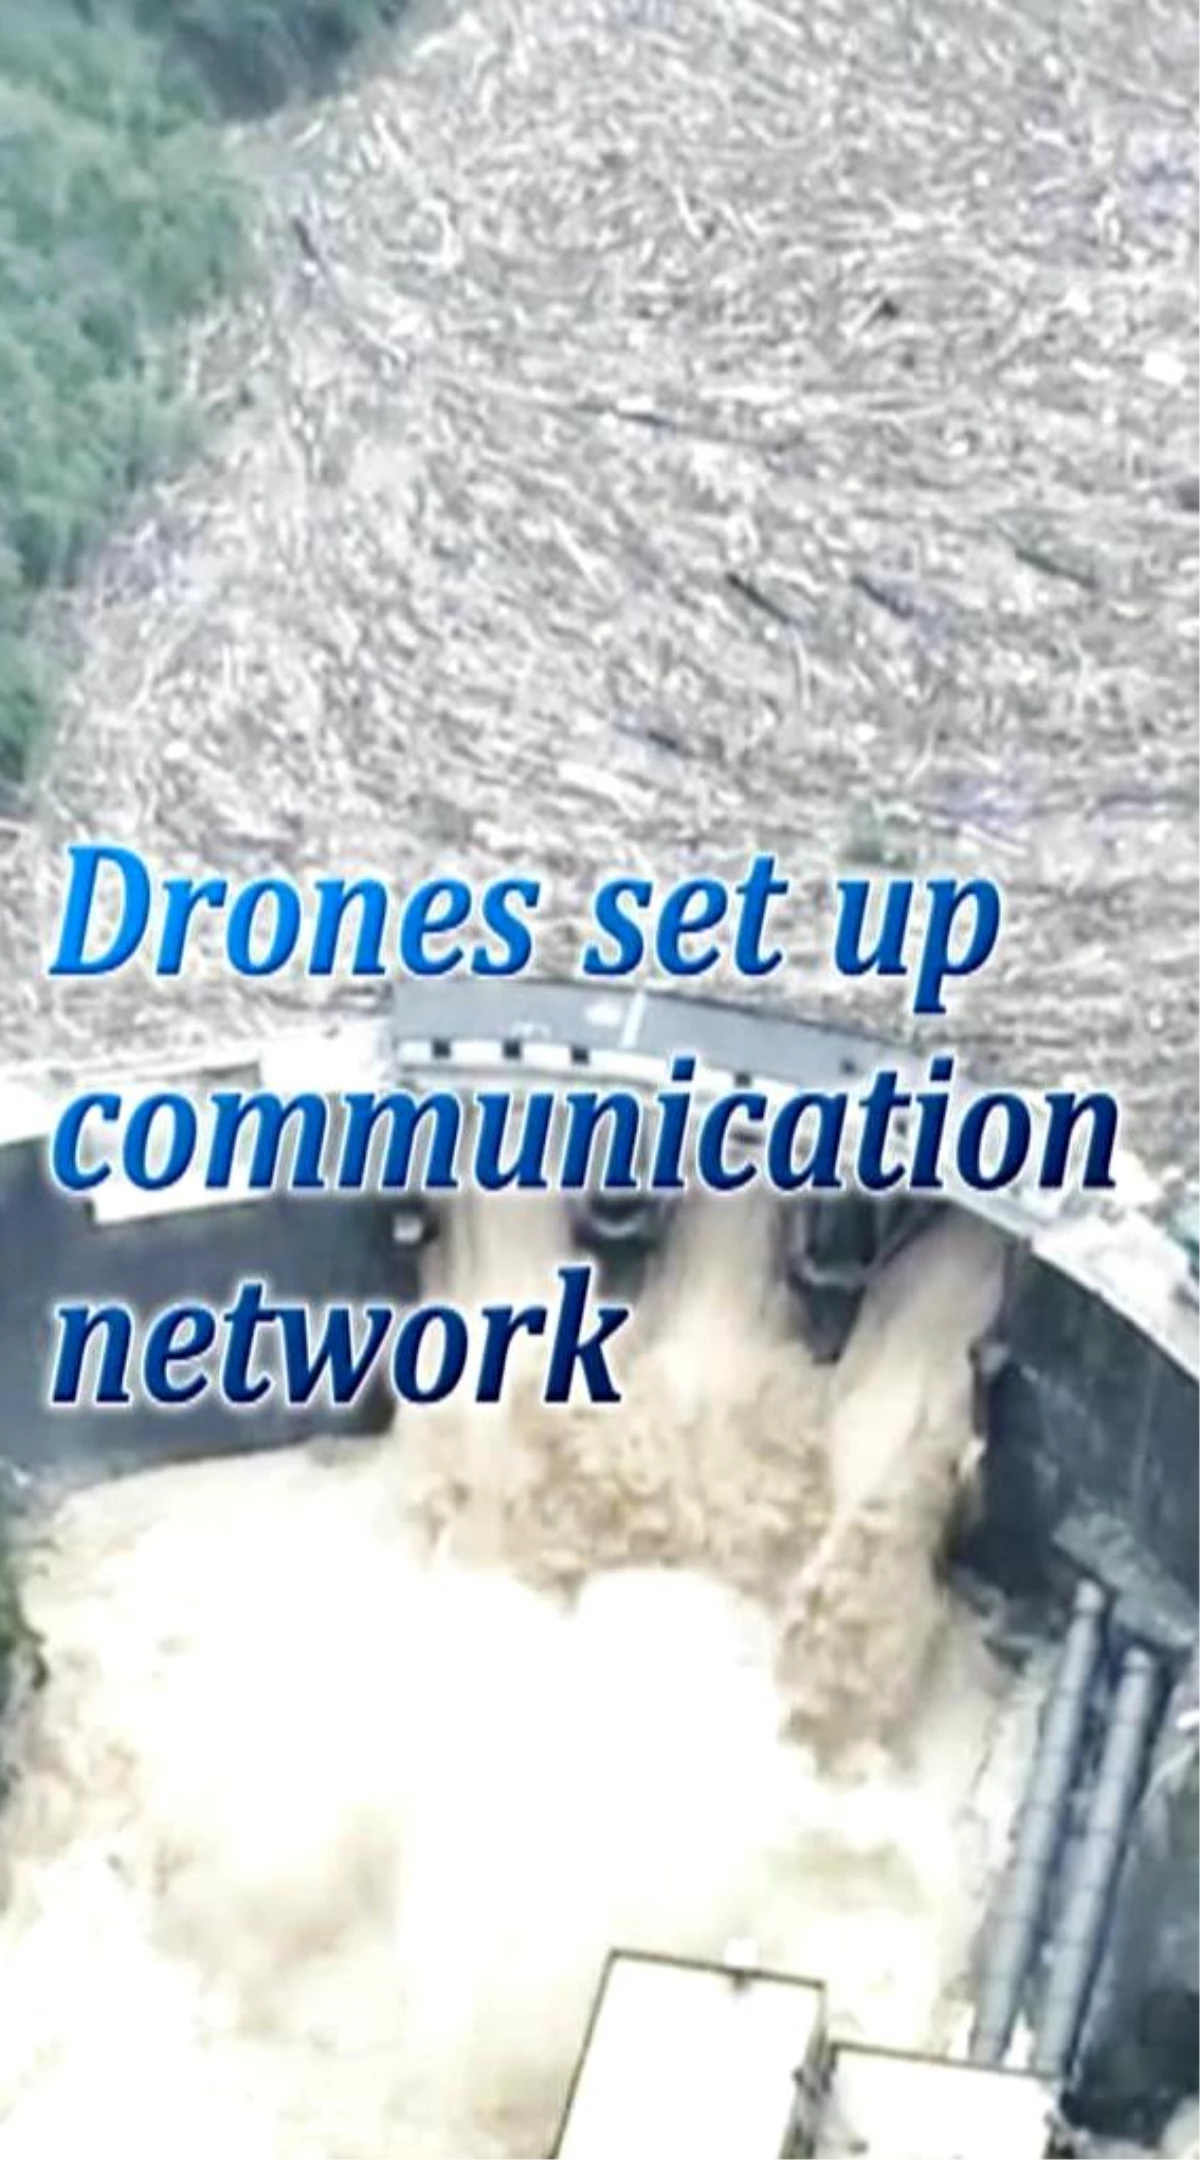 Çin\'de sel felaketinde iletişim için dronelar kullanıldı